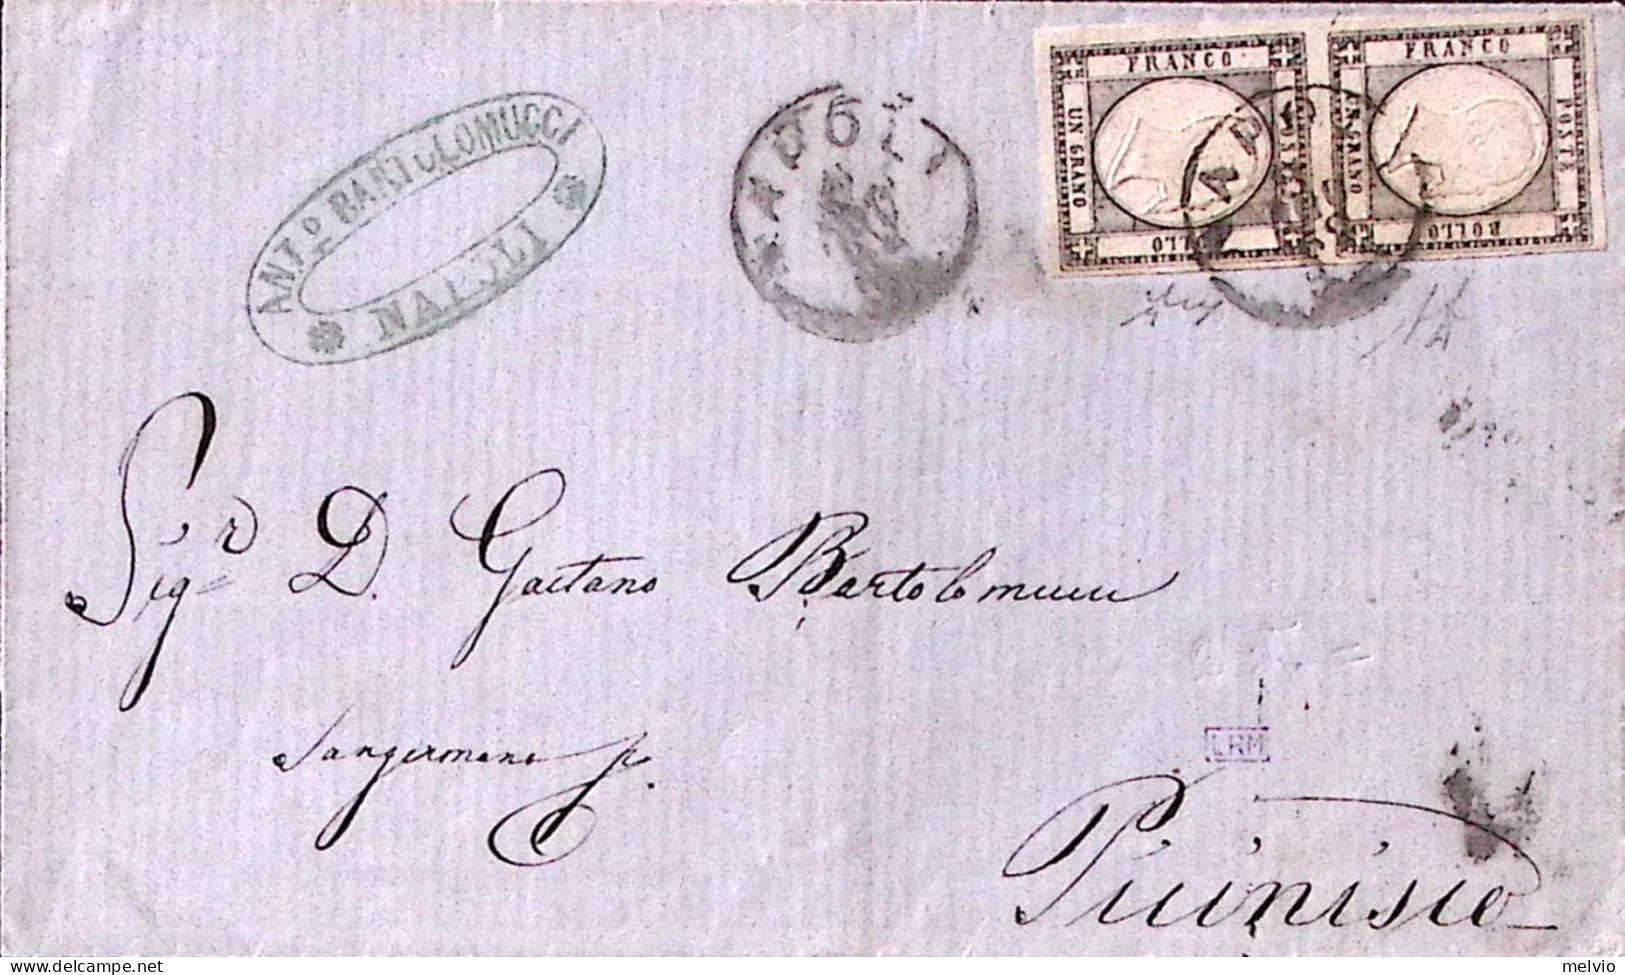 1862-Province Napoletane Coppia Gr.1 (19) Su Soprascritta Napoli (9.2.) F.to A D - Naples